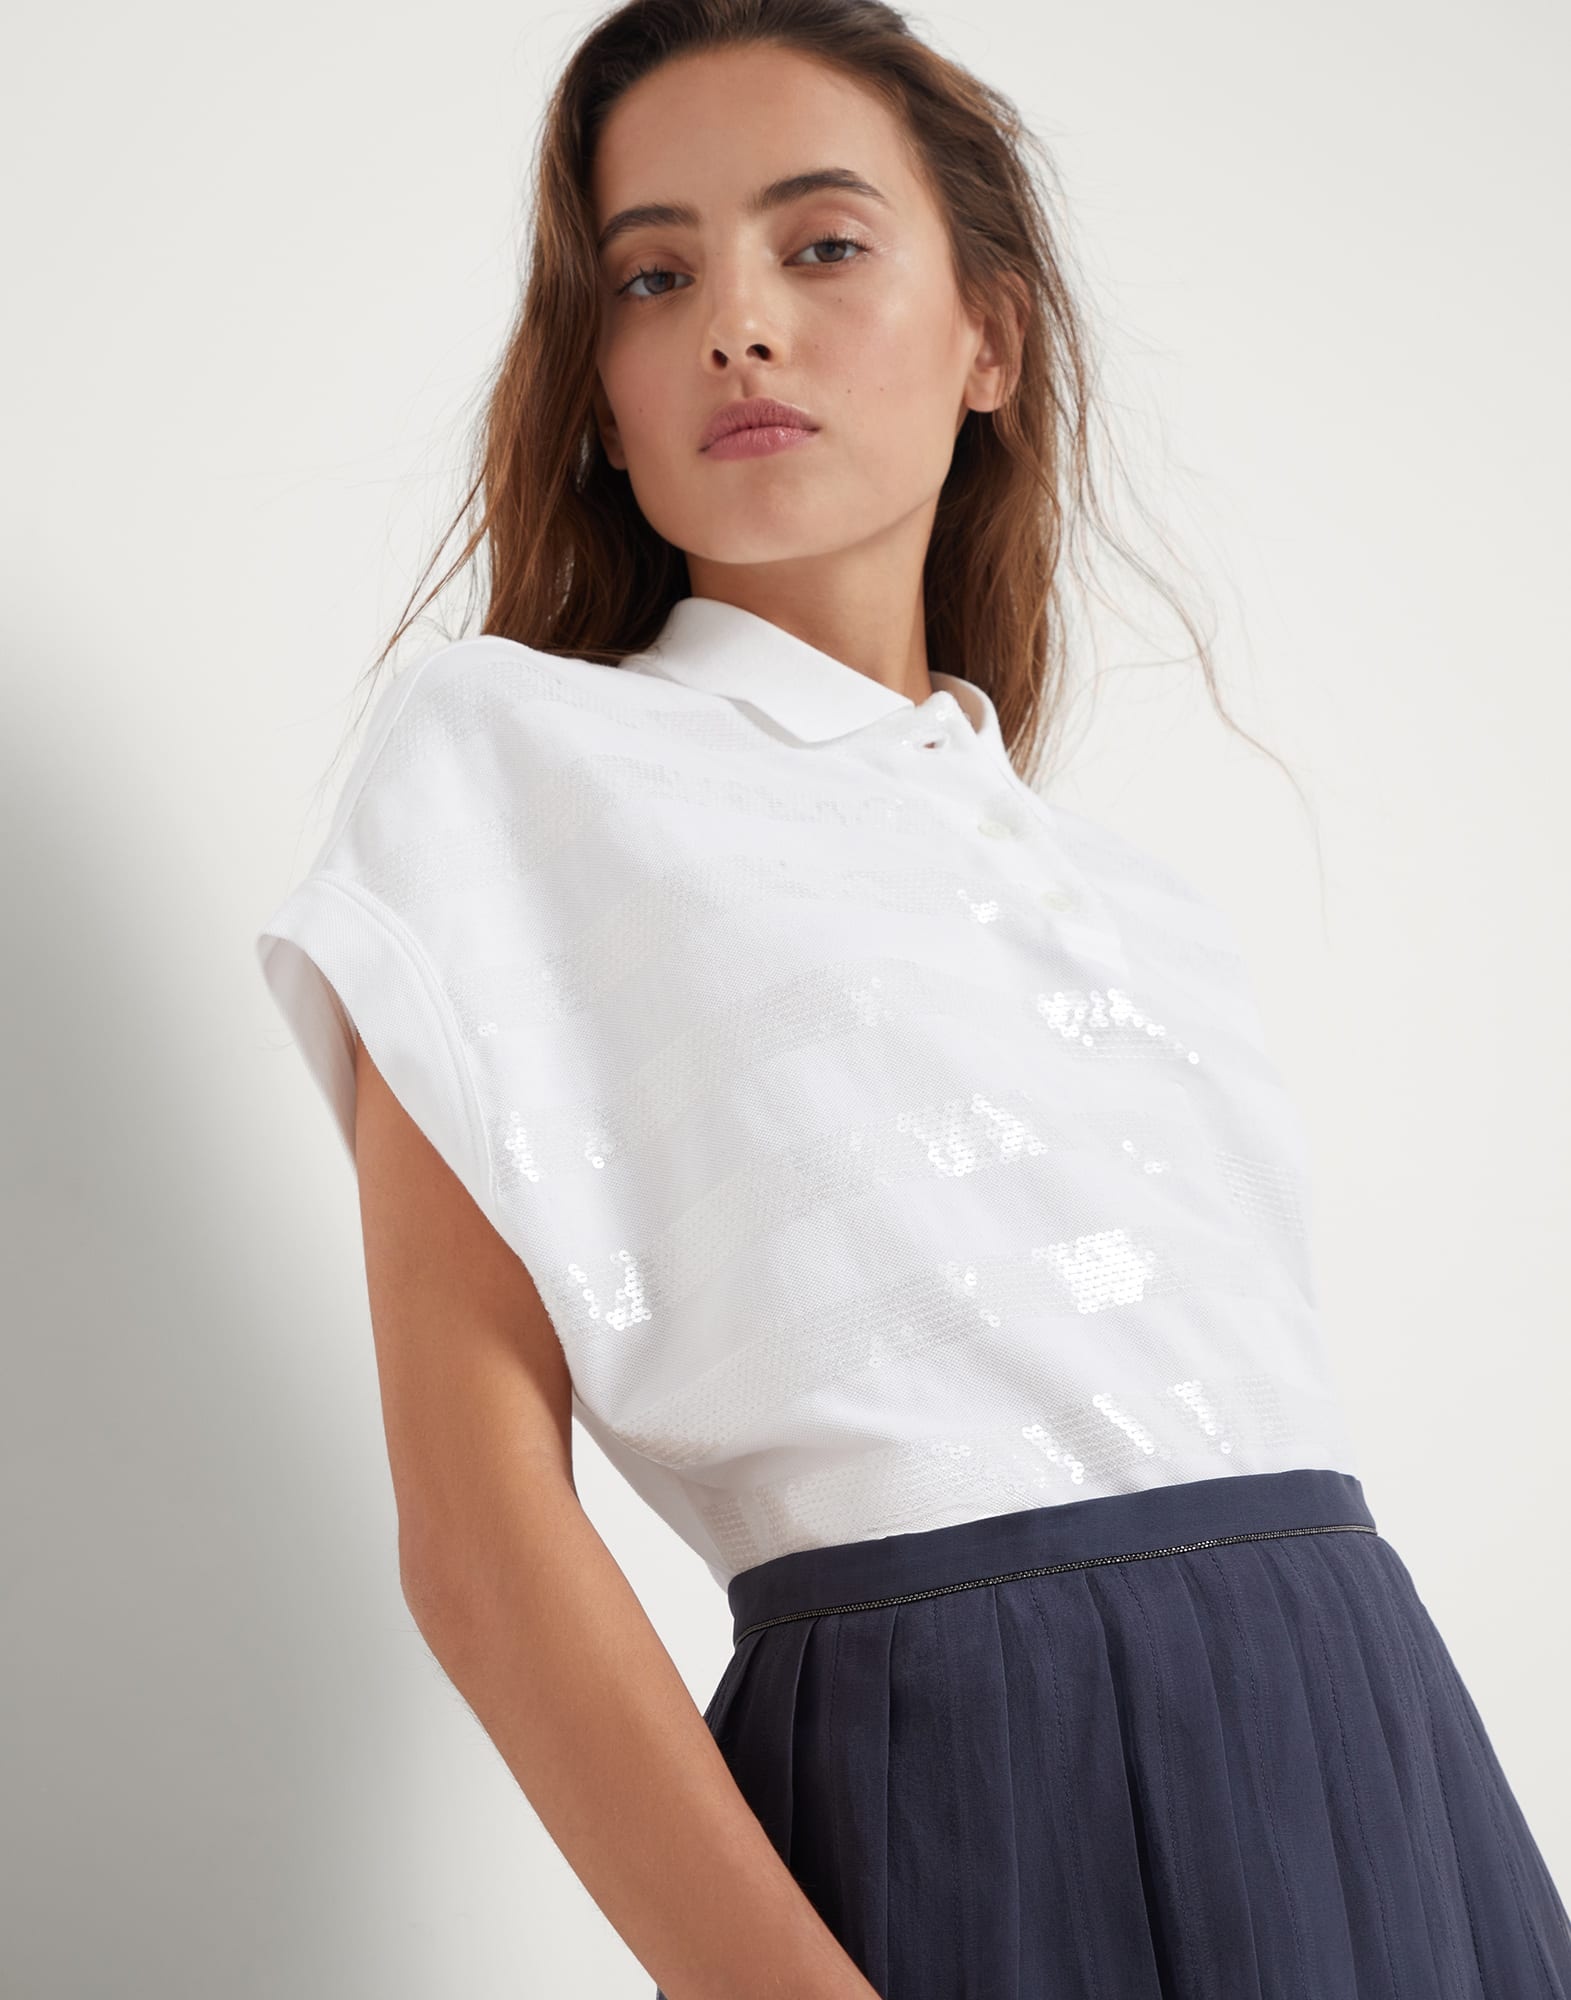 Crispy silk pleated midi skirt with shiny waistband - 3